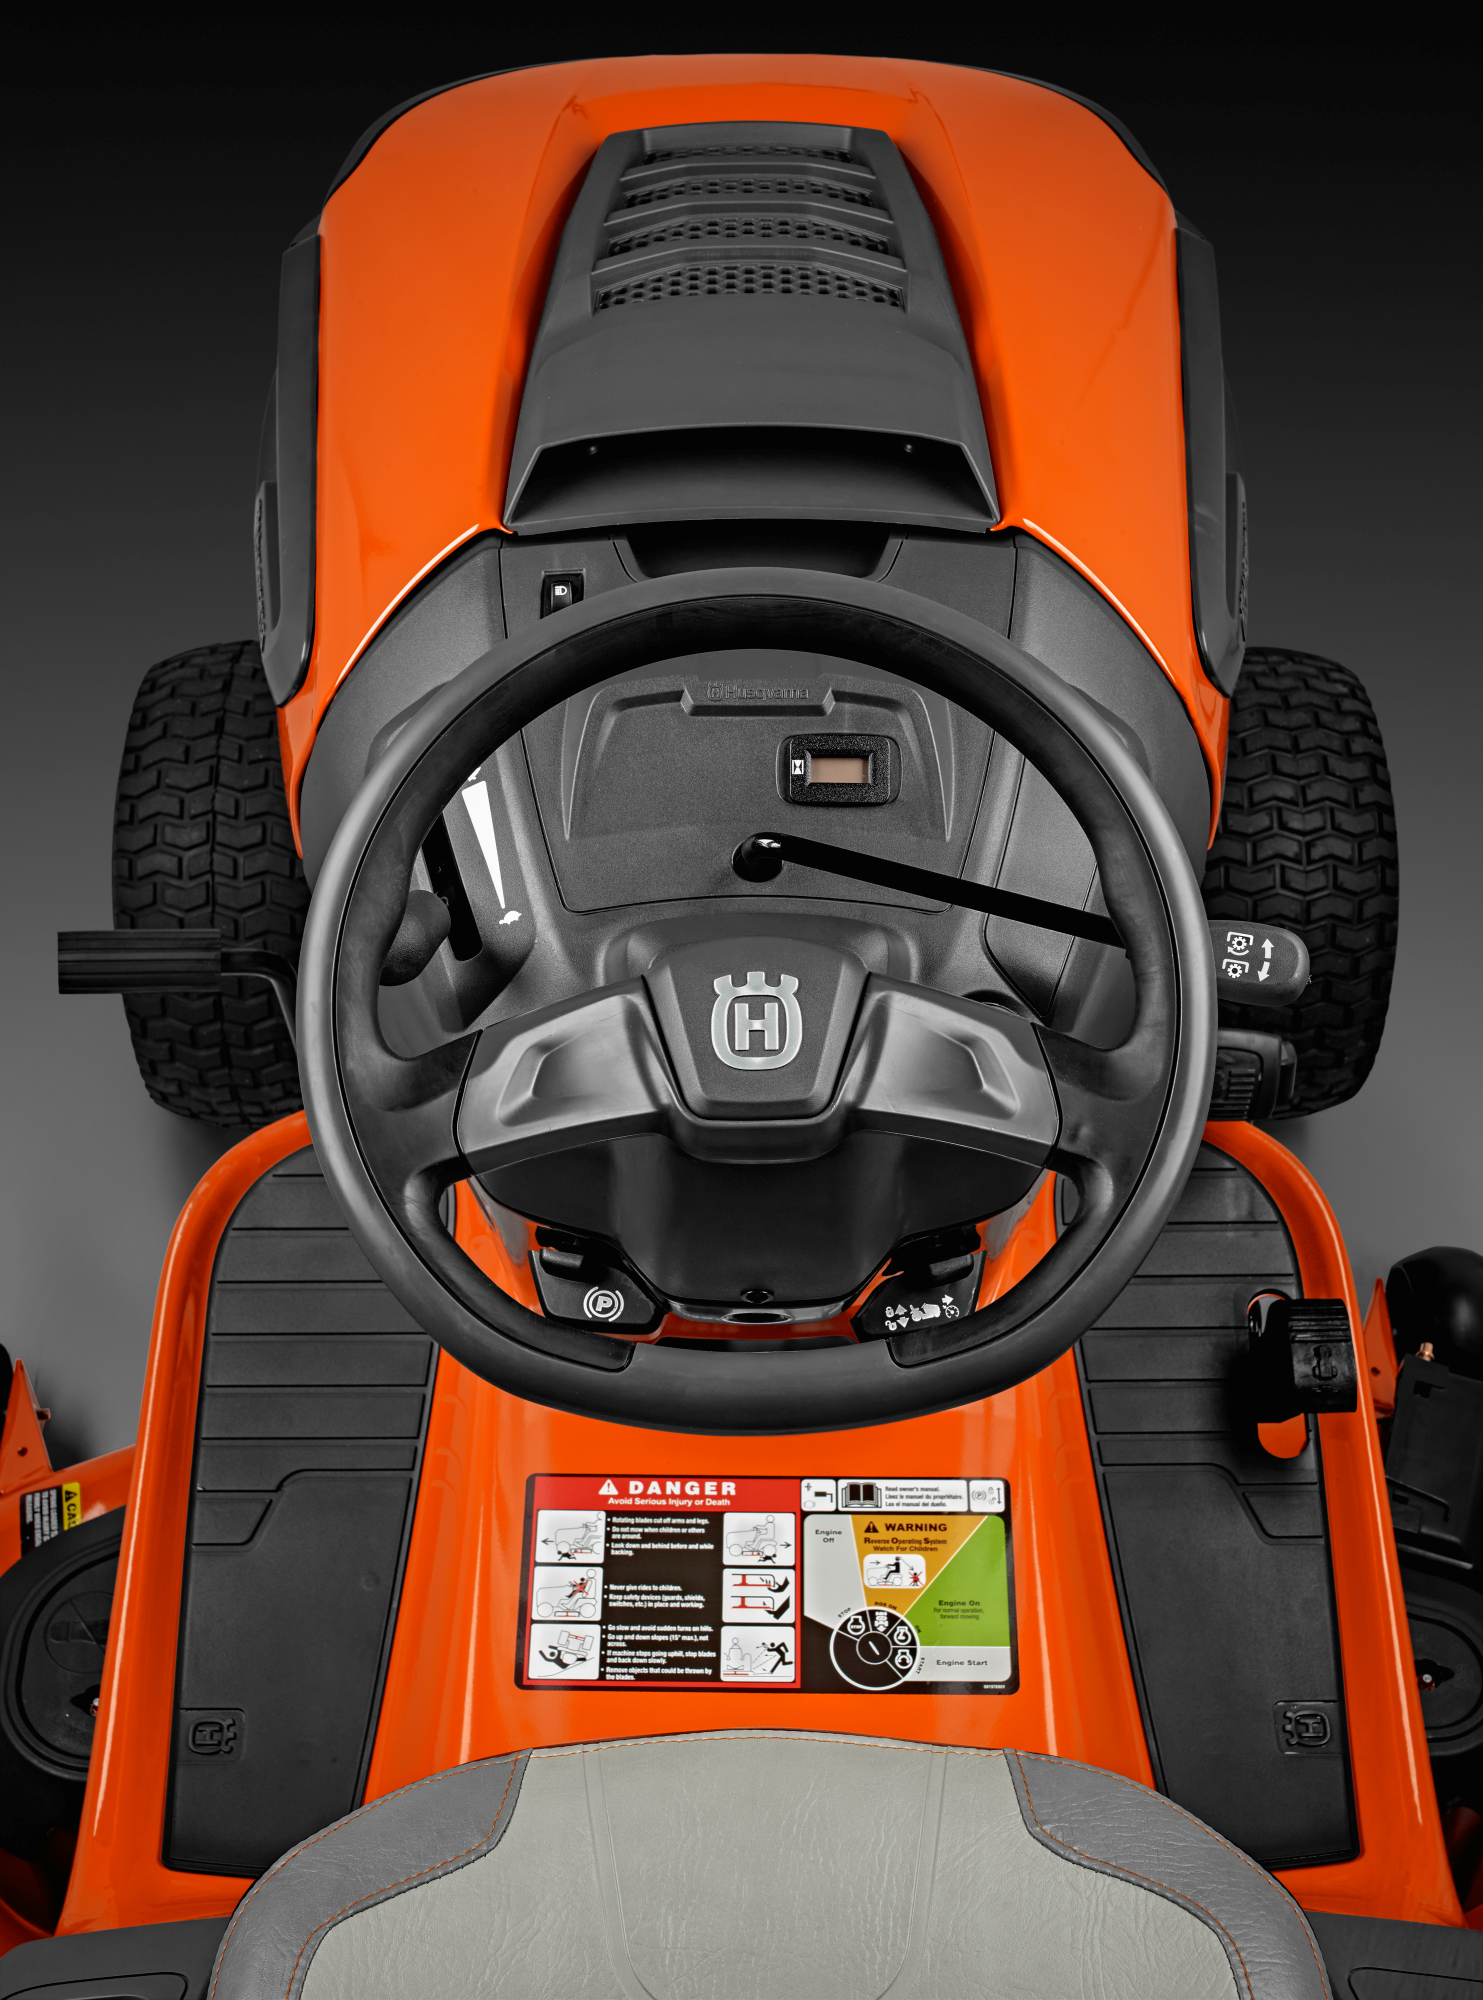 Oranžs Husqvarna zāles pļāvējs traktors, modelis ''TC 138'', skats no vadītāja viets uz vadības paneli